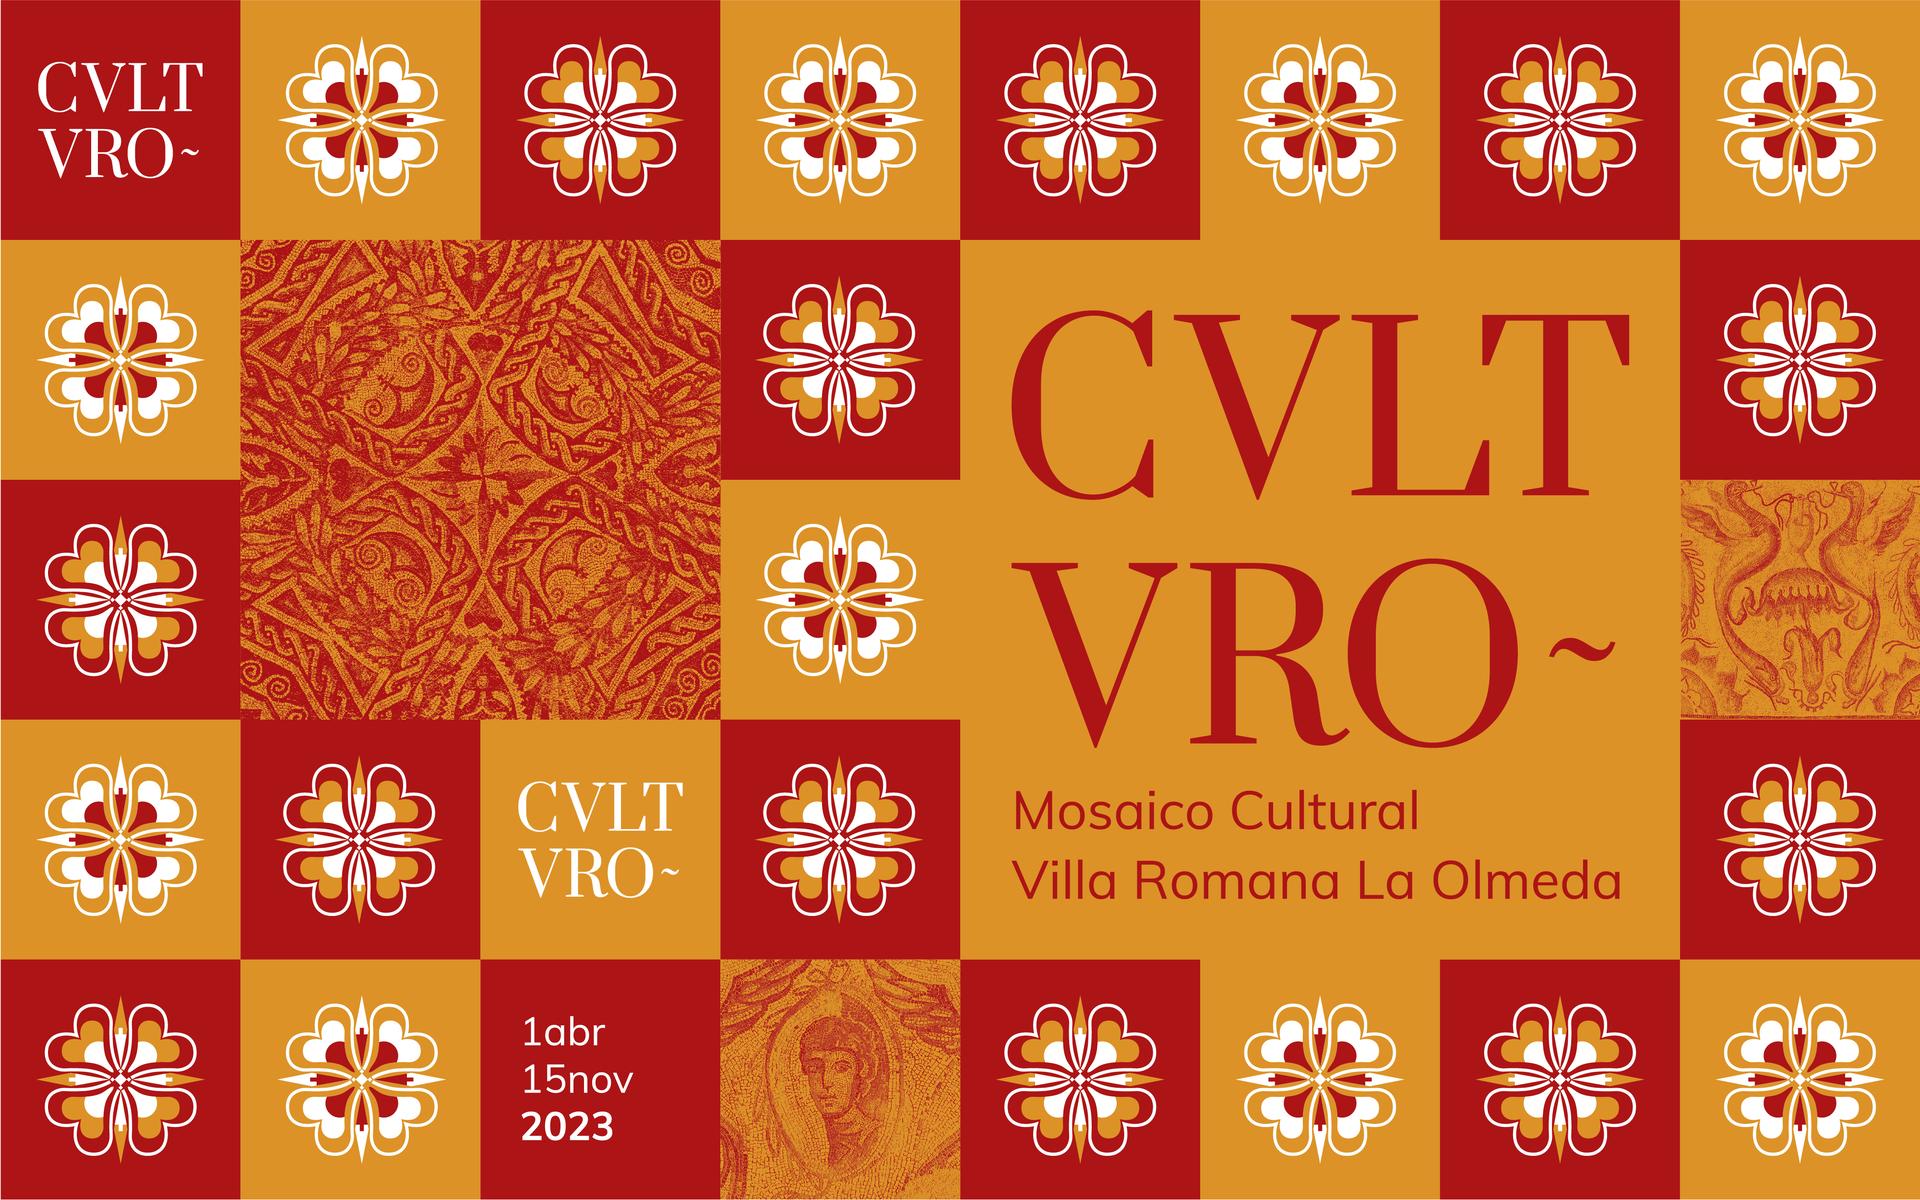 CVLTVRO MOSAICO CULTURAL VILLA ROMANA LA OLMEDA PROGRAMA DE ACTIVIDADES 2023